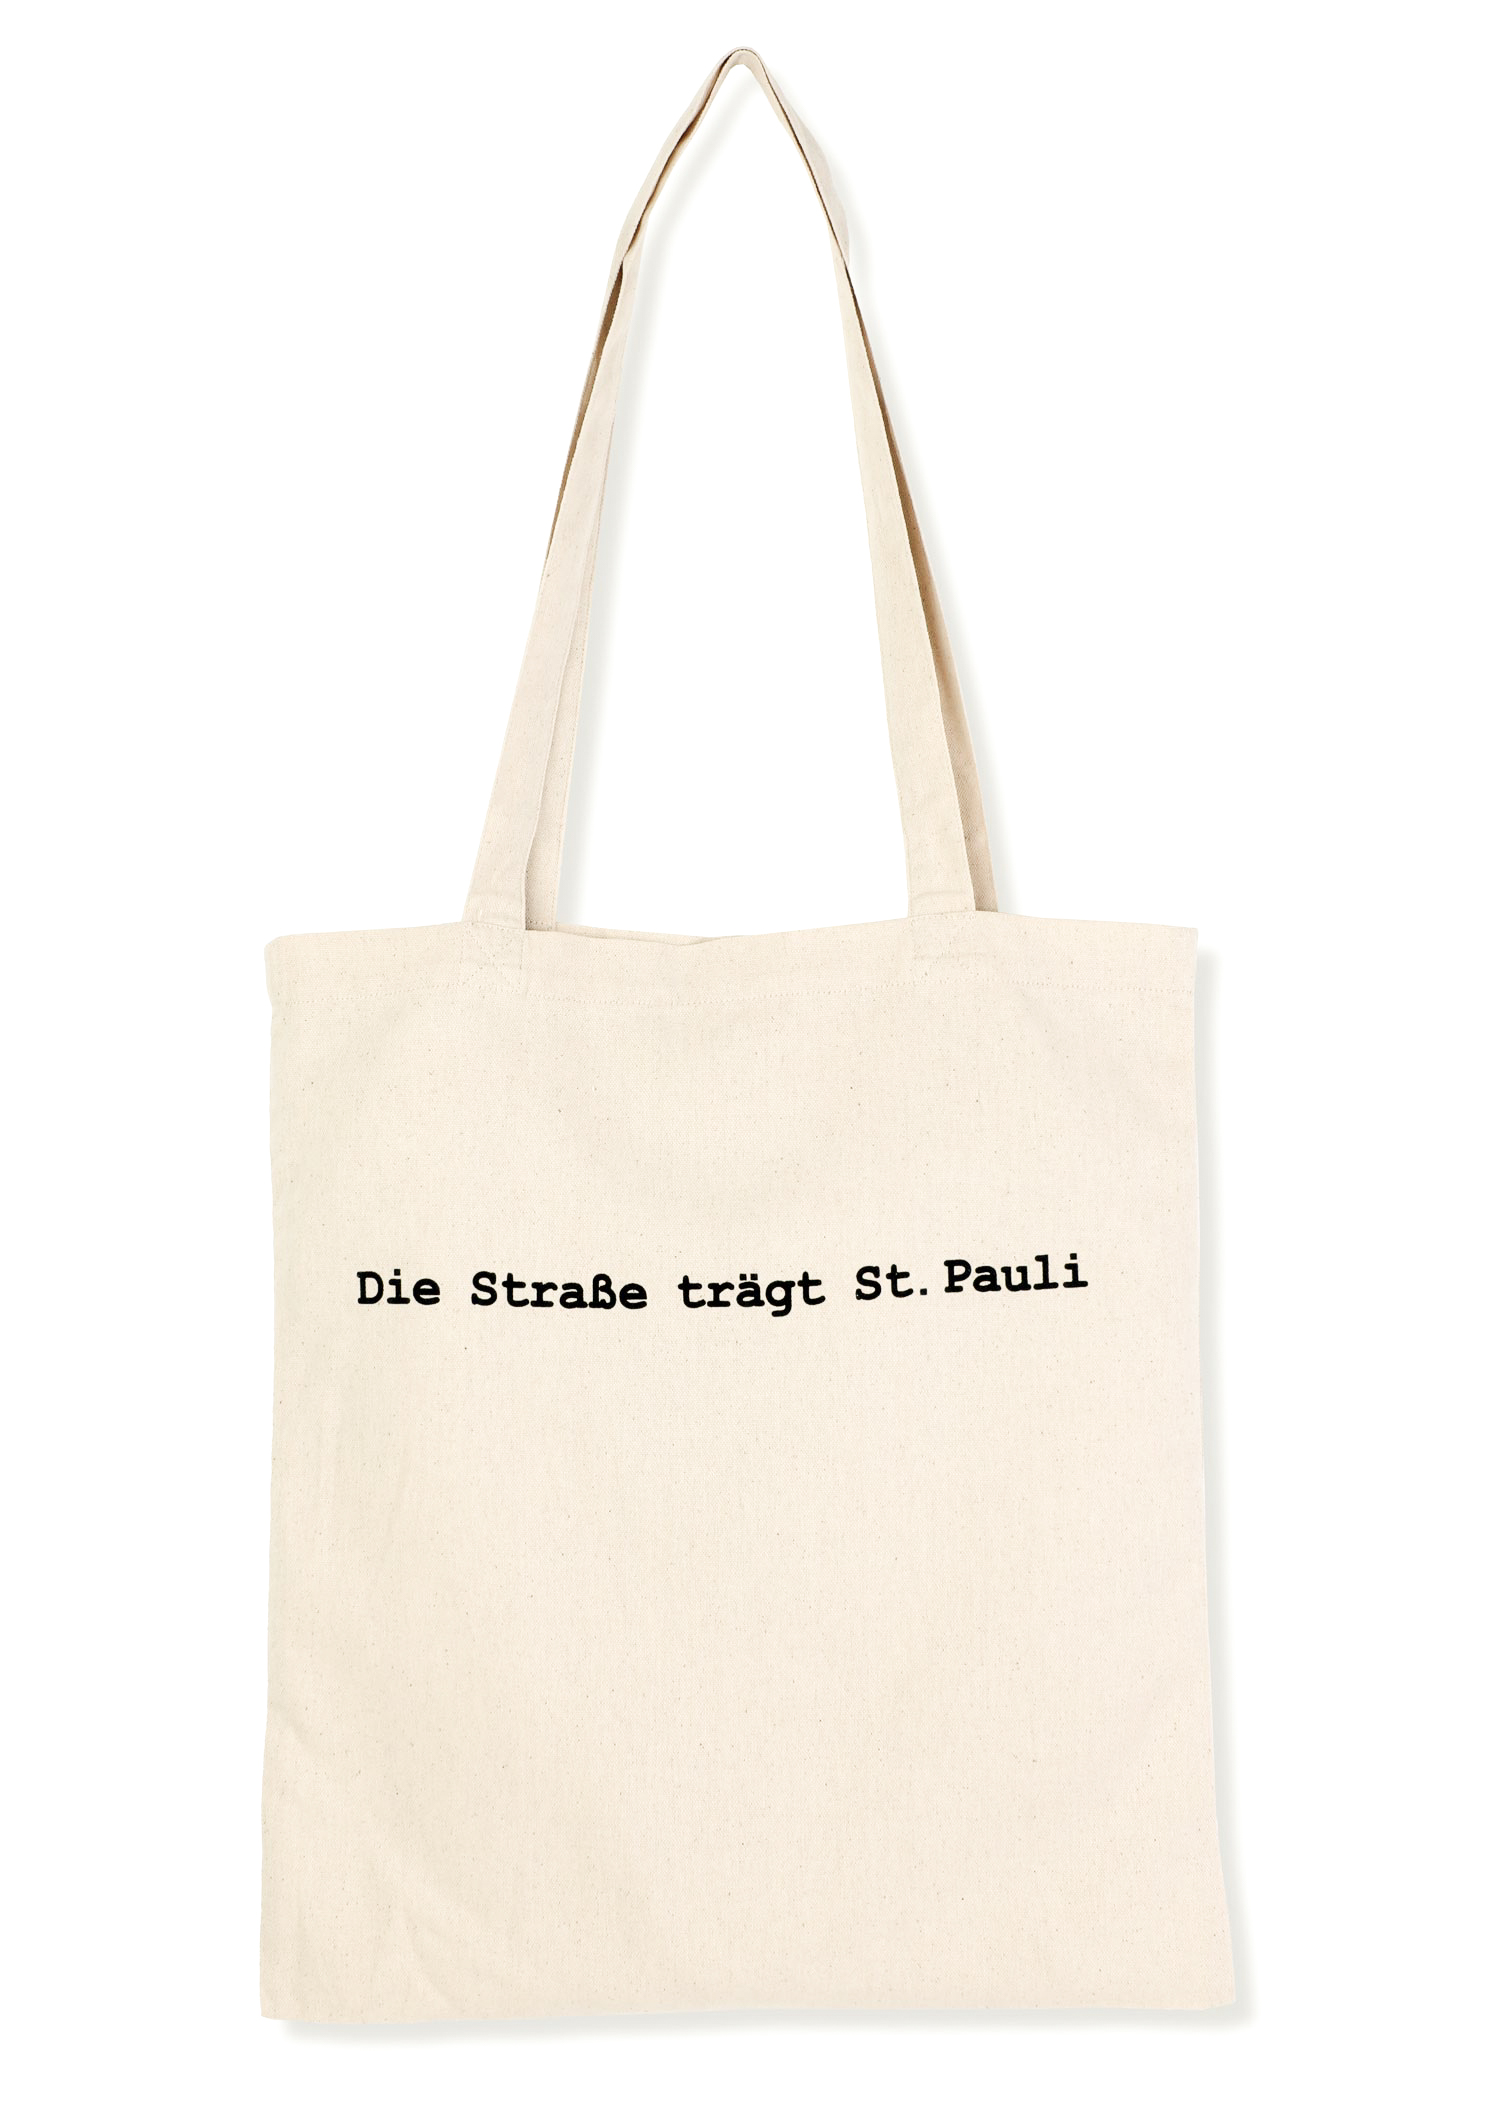 Jutebeutel "Die Strasse trägt St. Pauli"